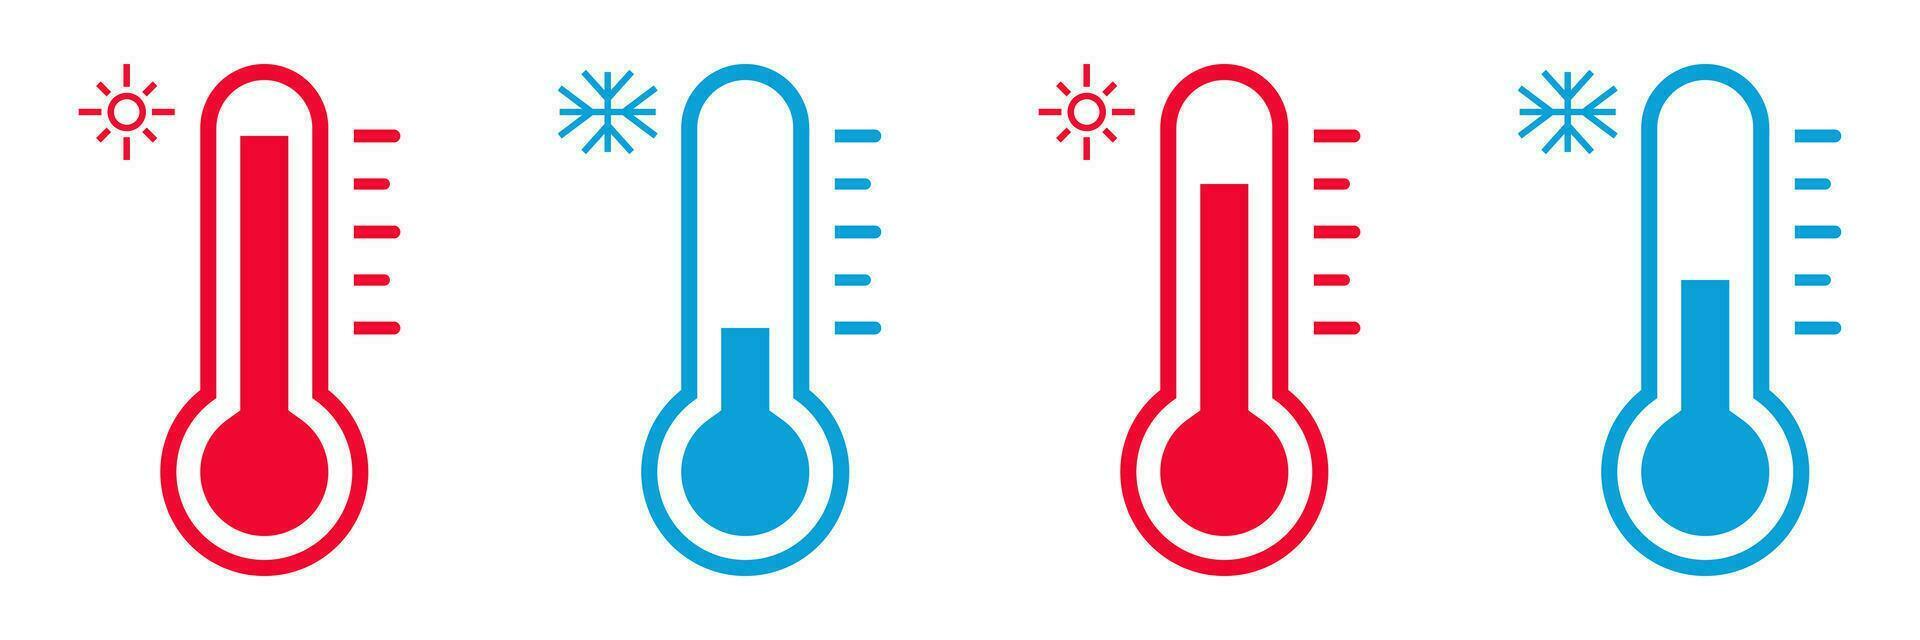 termometer ikon uppsättning i röd och blå färger. symboler för mätning varm och kall kropp temperatur. vektor isolerat på vit bakgrund, modern och enkel platt design.